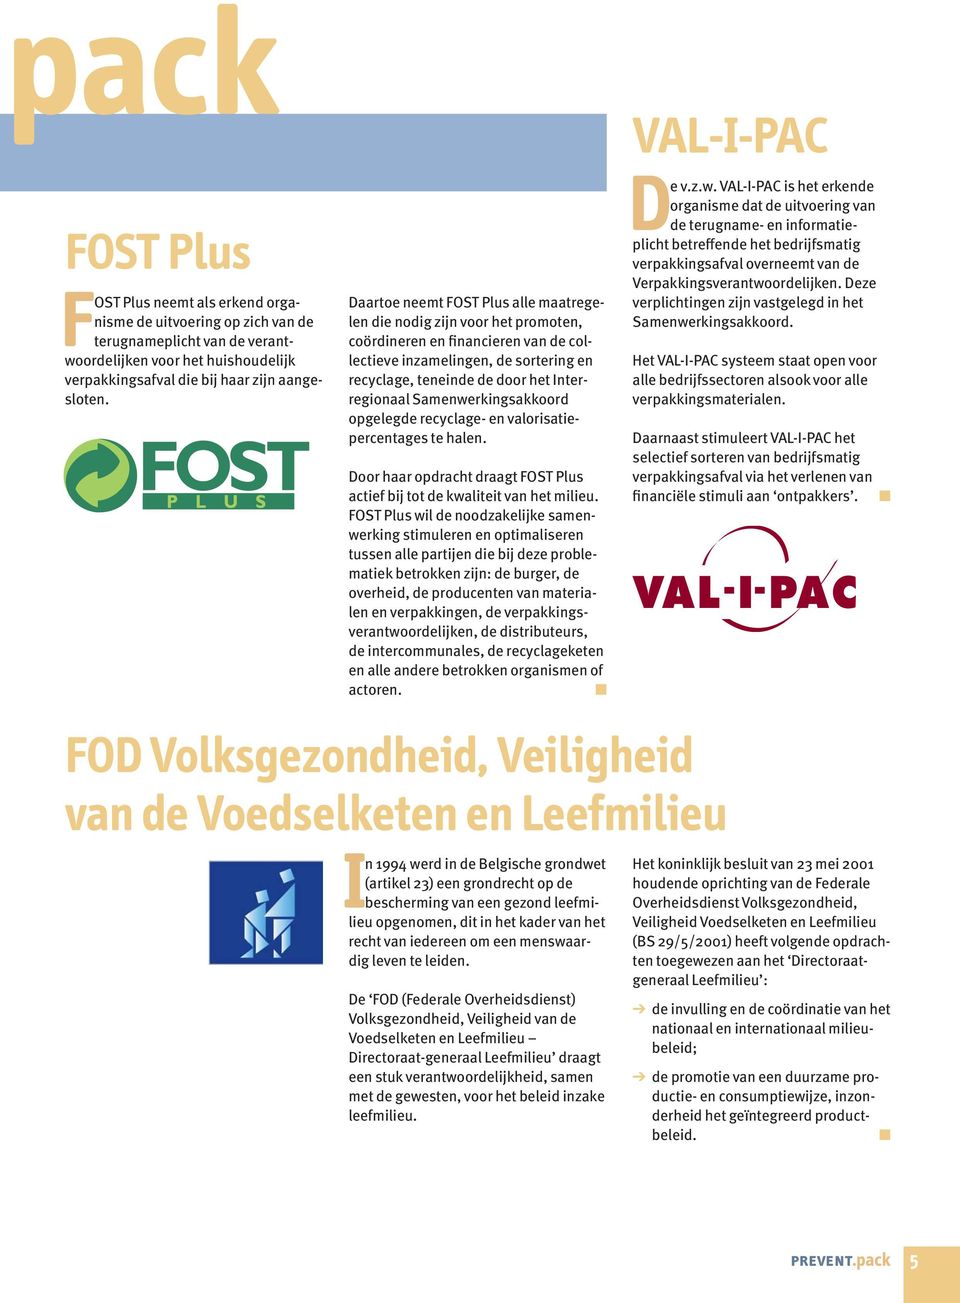 Samenwerkingsakkoord opgelegde recyclage- en valorisatiepercentages te halen. Door haar opdracht draagt FOST Plus actief bij tot de kwaliteit van het milieu.